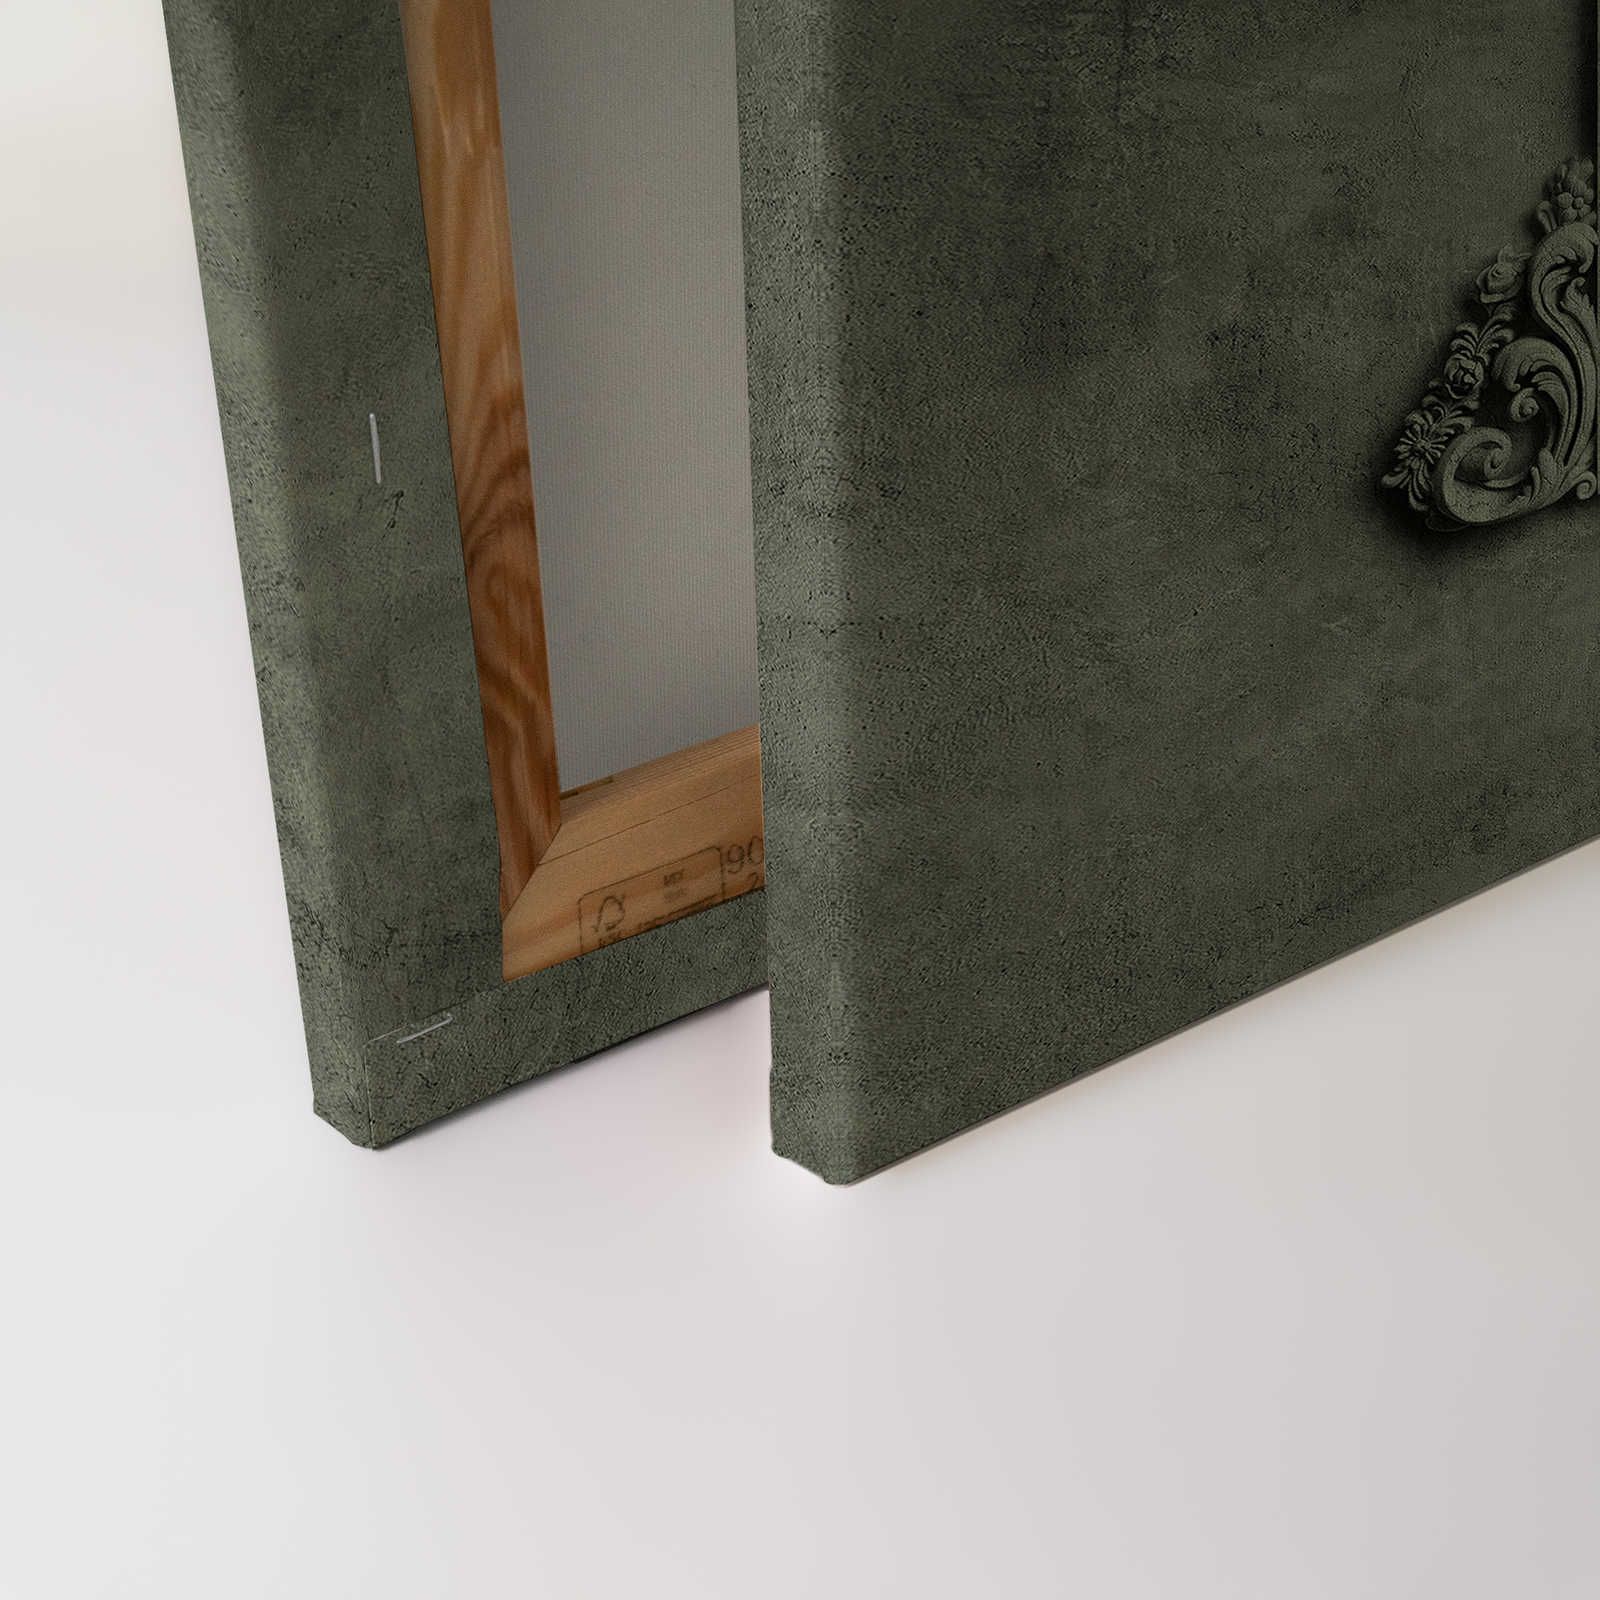             Lyon 2 - Toile 3D cadre stuc & aspect plâtre vert - 1,20 m x 0,80 m
        